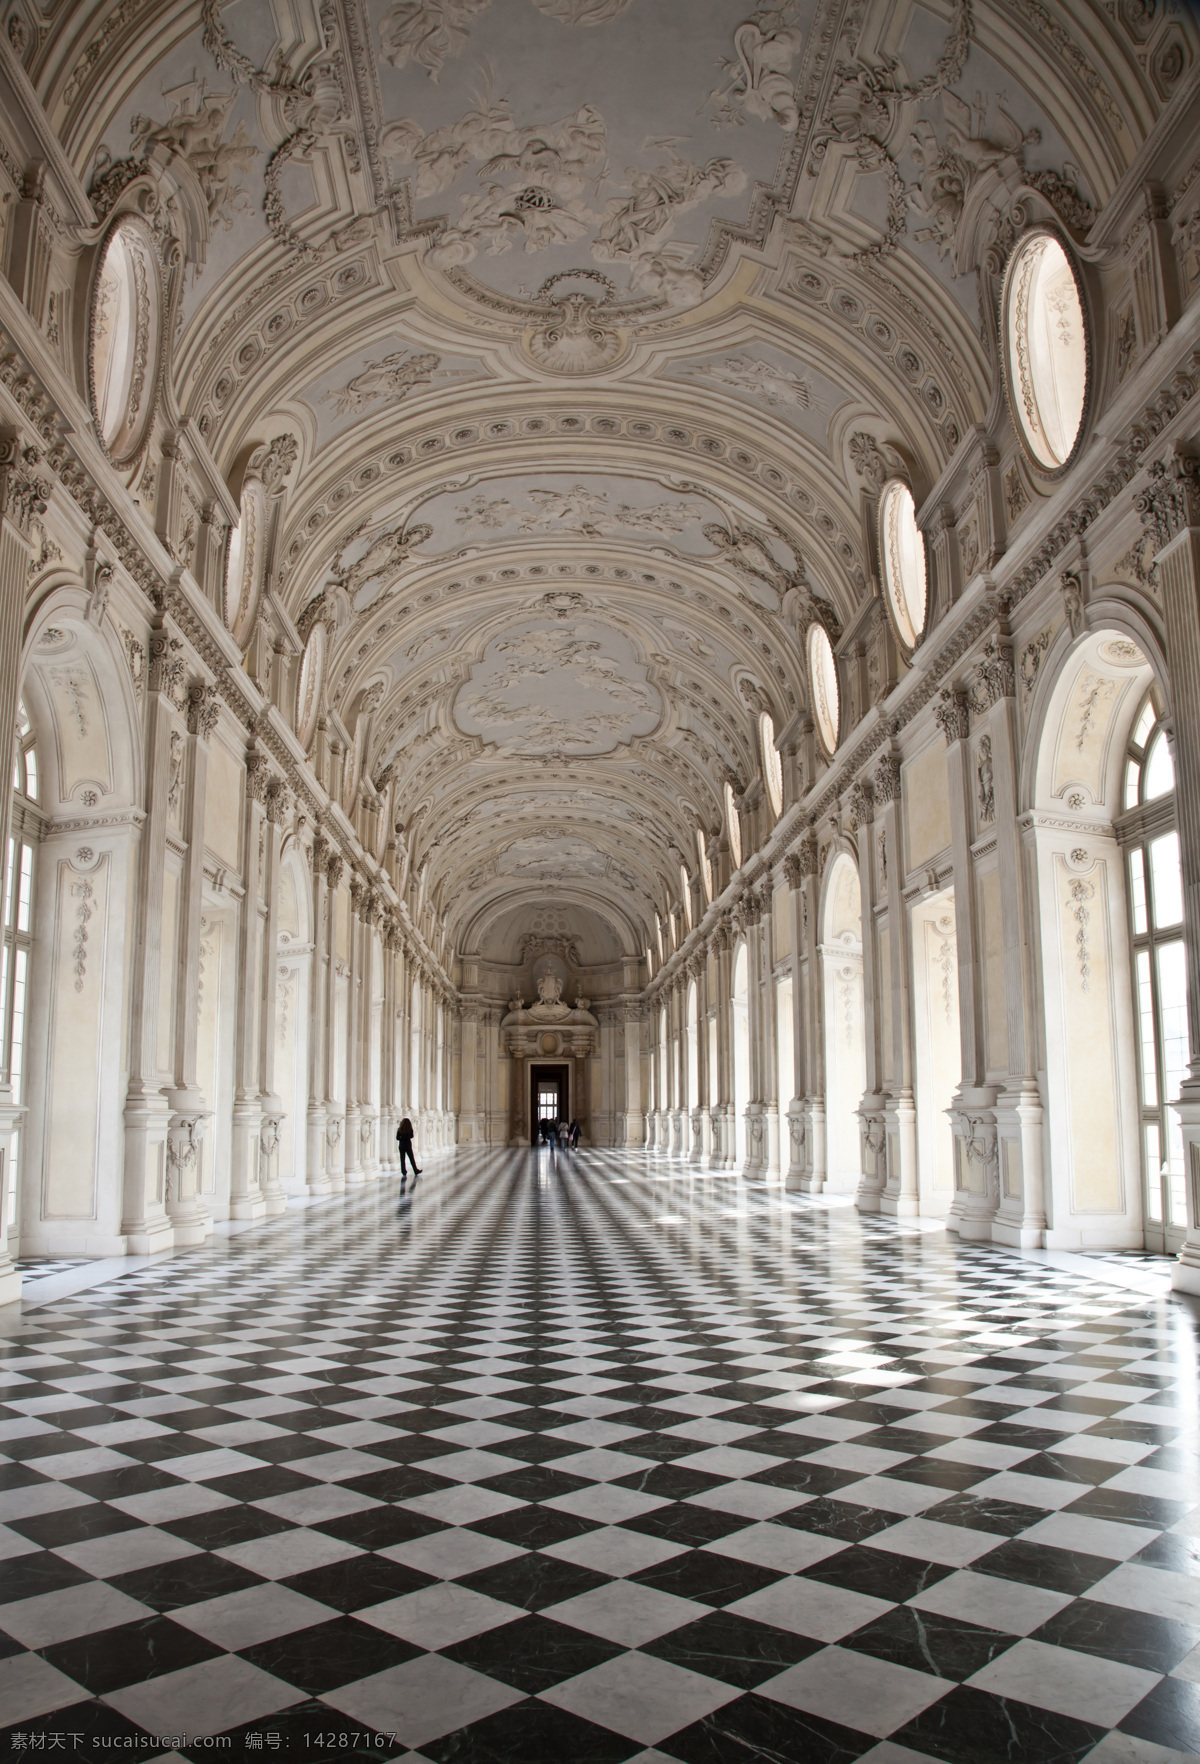 欧洲皇室宫殿 欧洲 皇室 宫殿 空旷 黑白地板 高贵 奢华 雕刻 穹顶细致 室内摄影 建筑园林